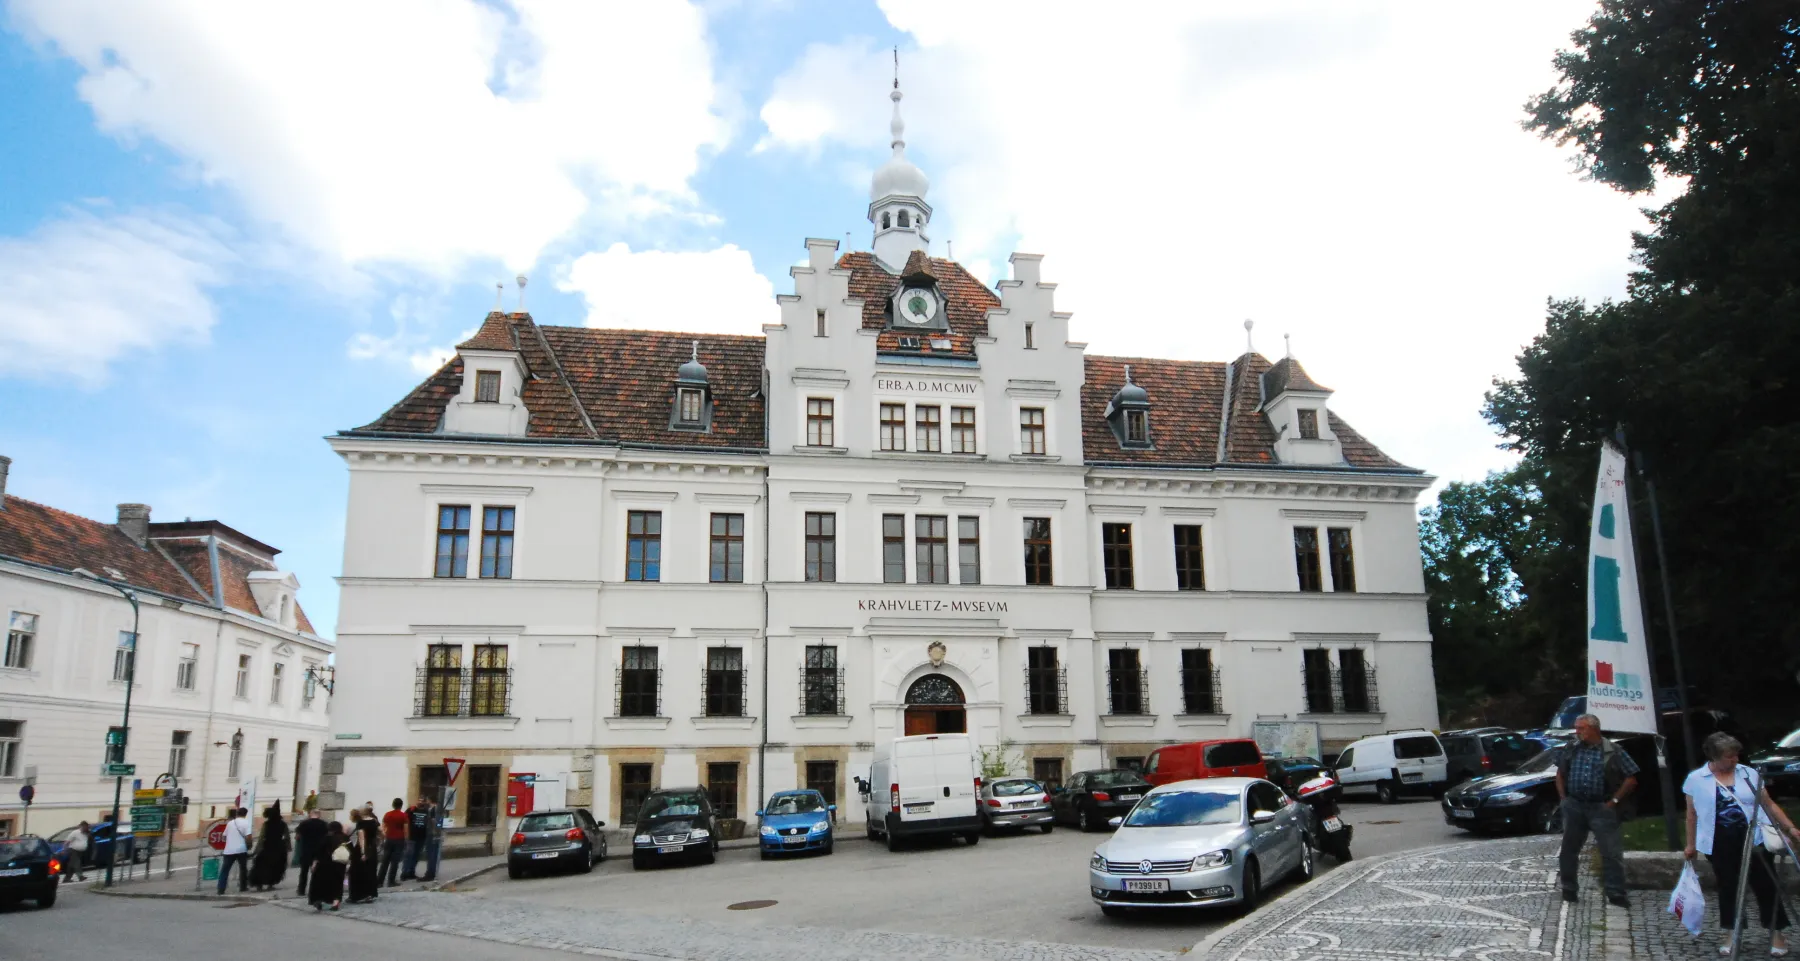 Photo showing: Krahuletz-Museum